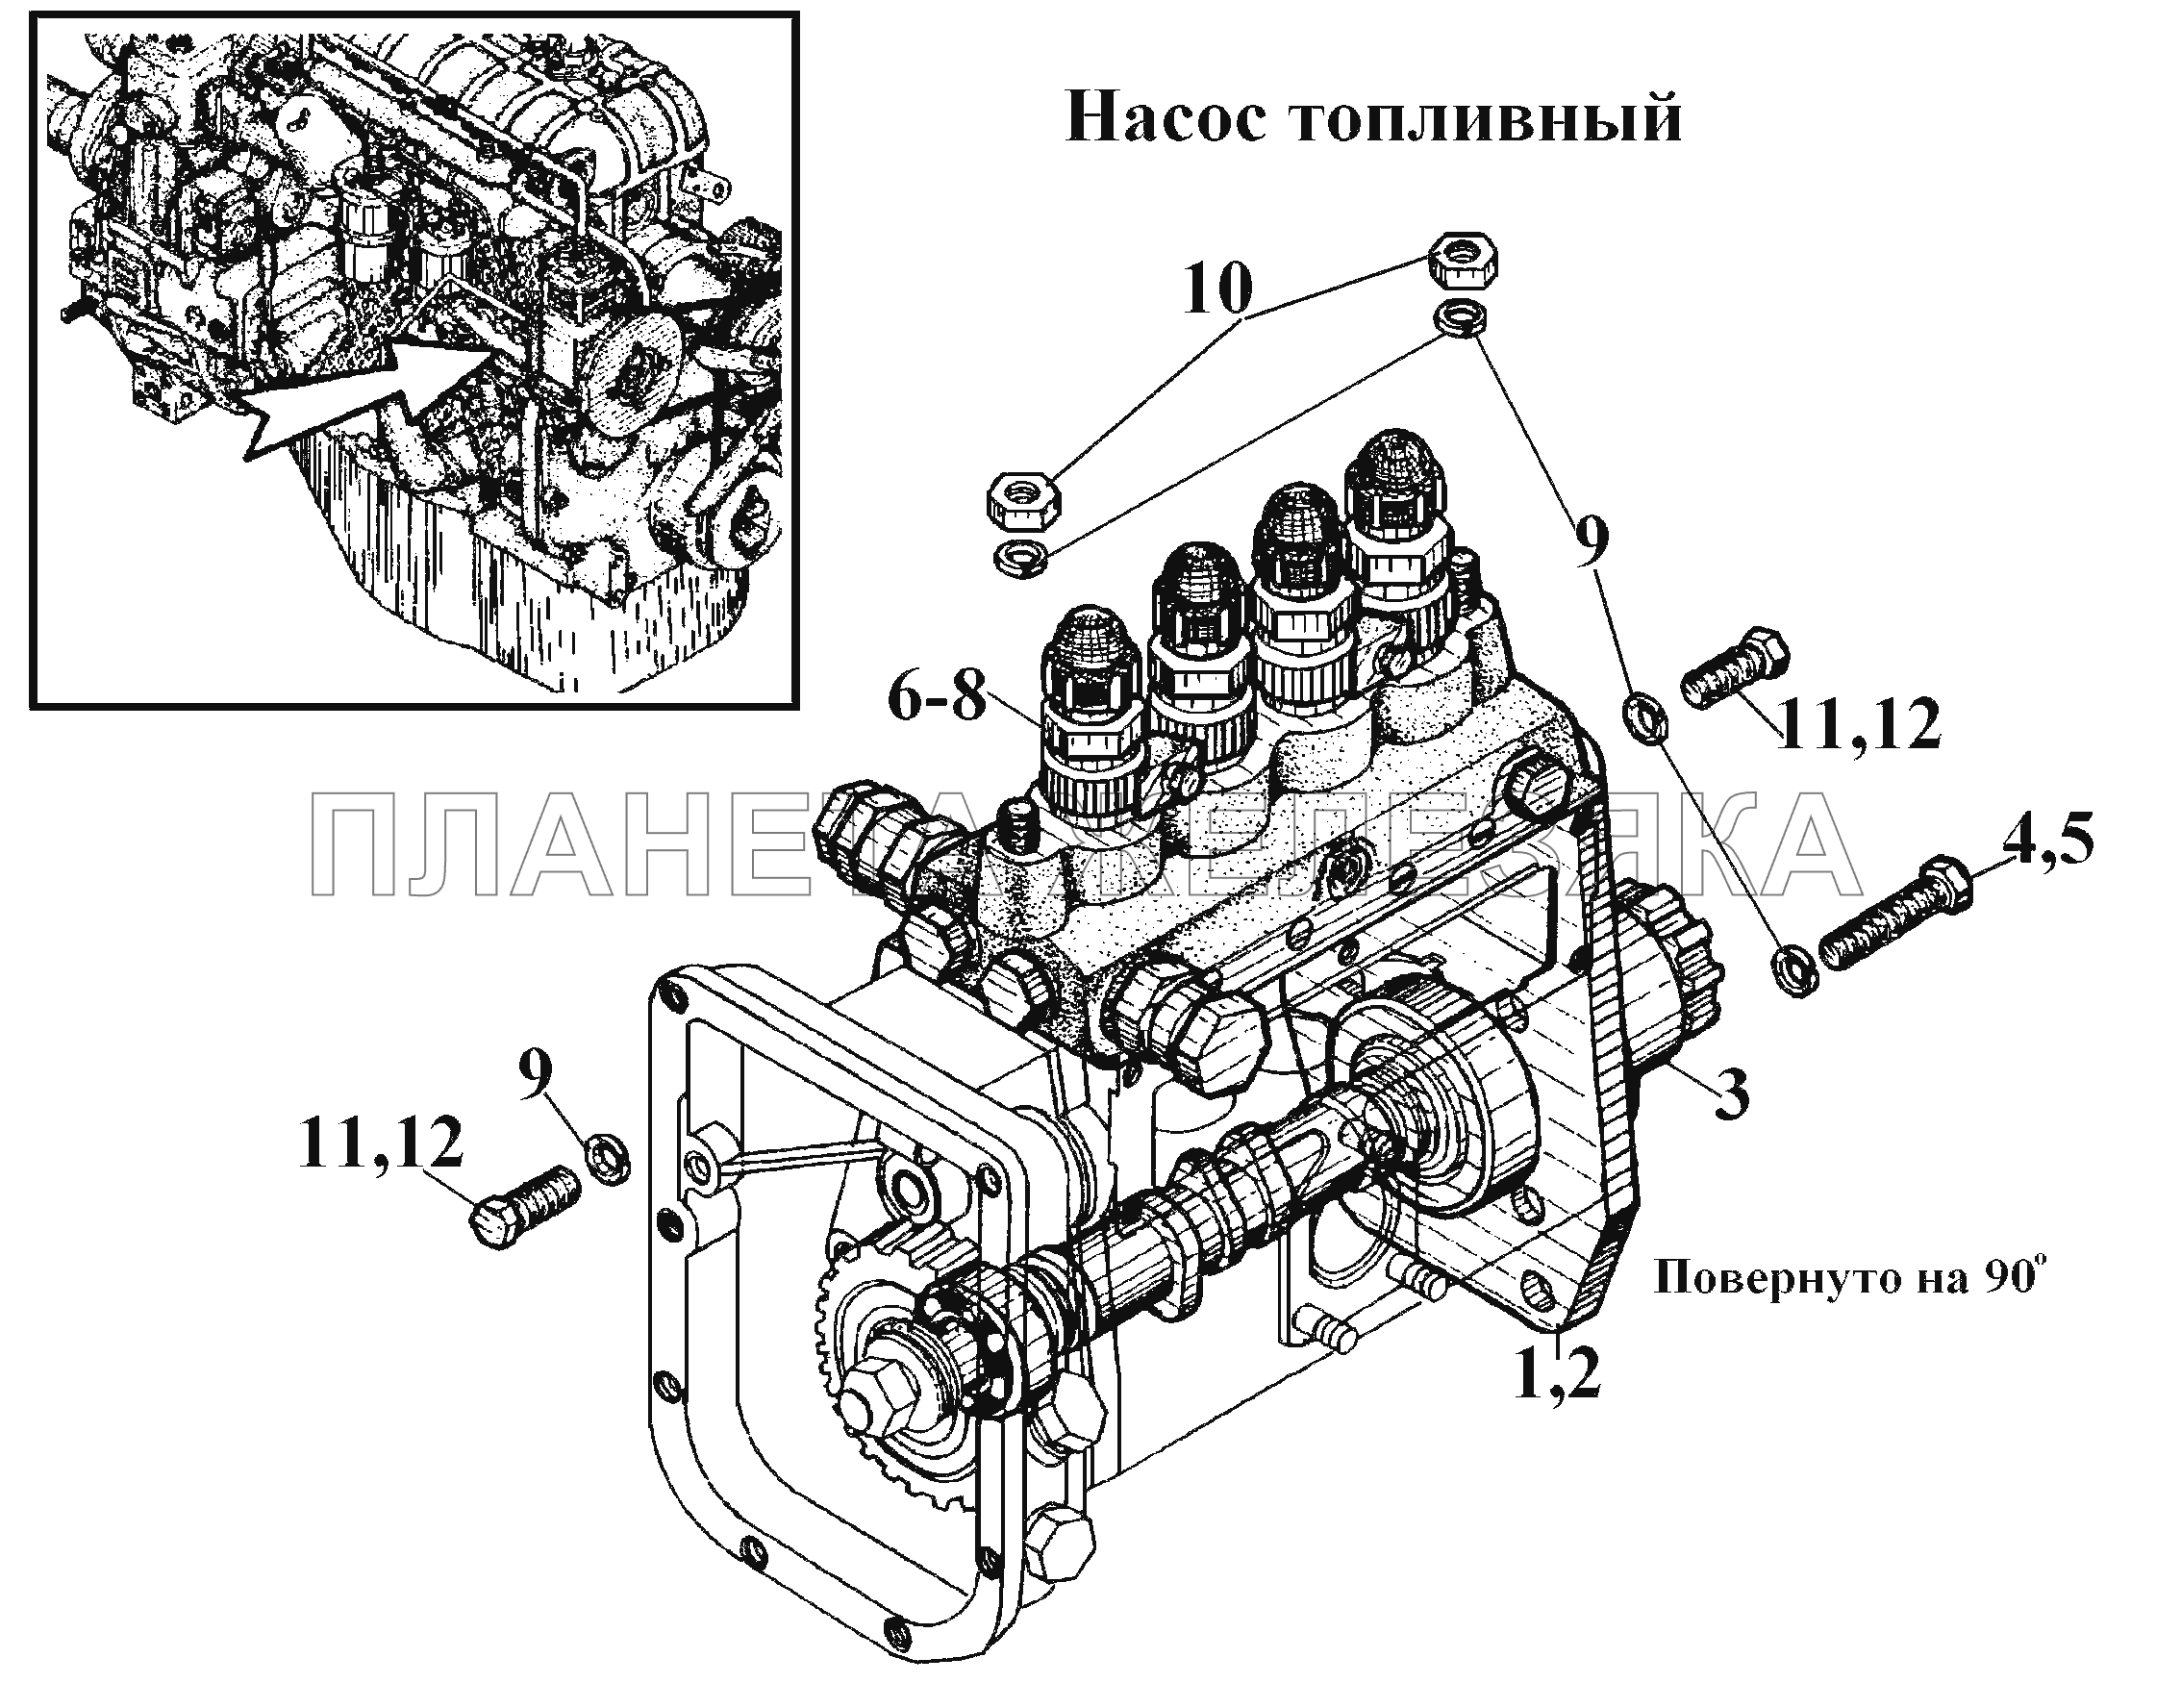 Насос топливный (2) ВТ-100Д